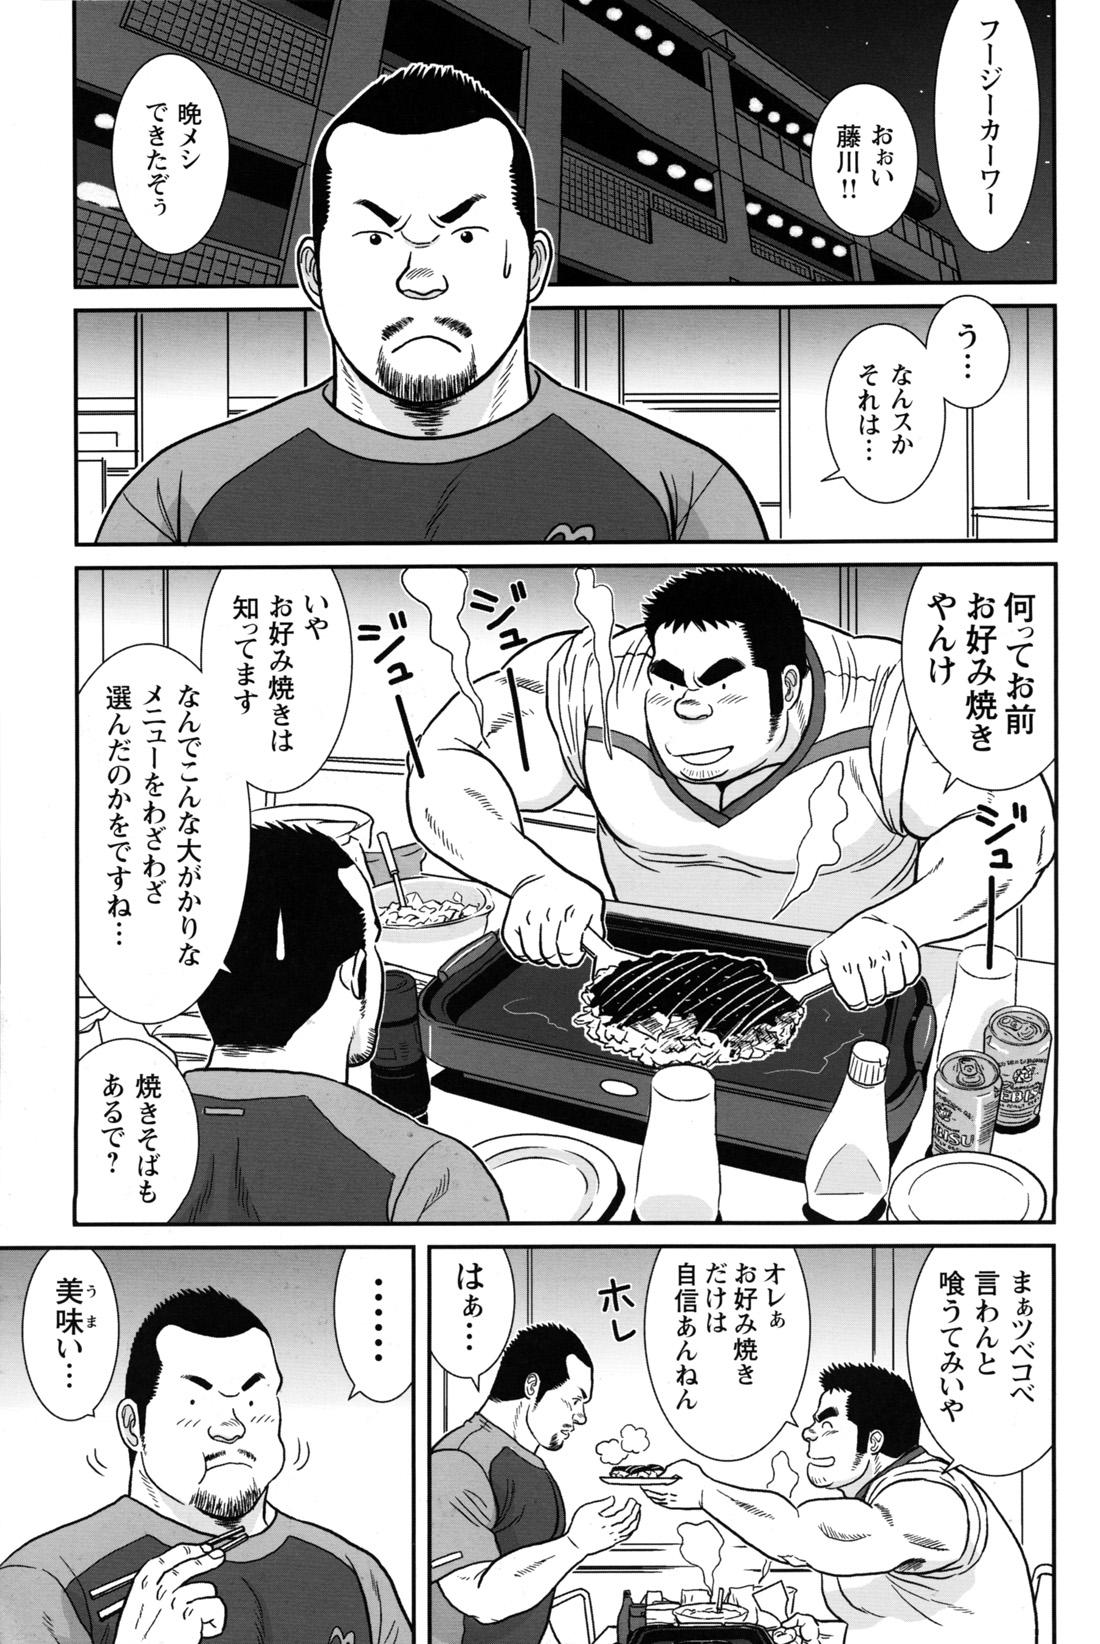 Comic G-men Gaho No.12 Aibou 188